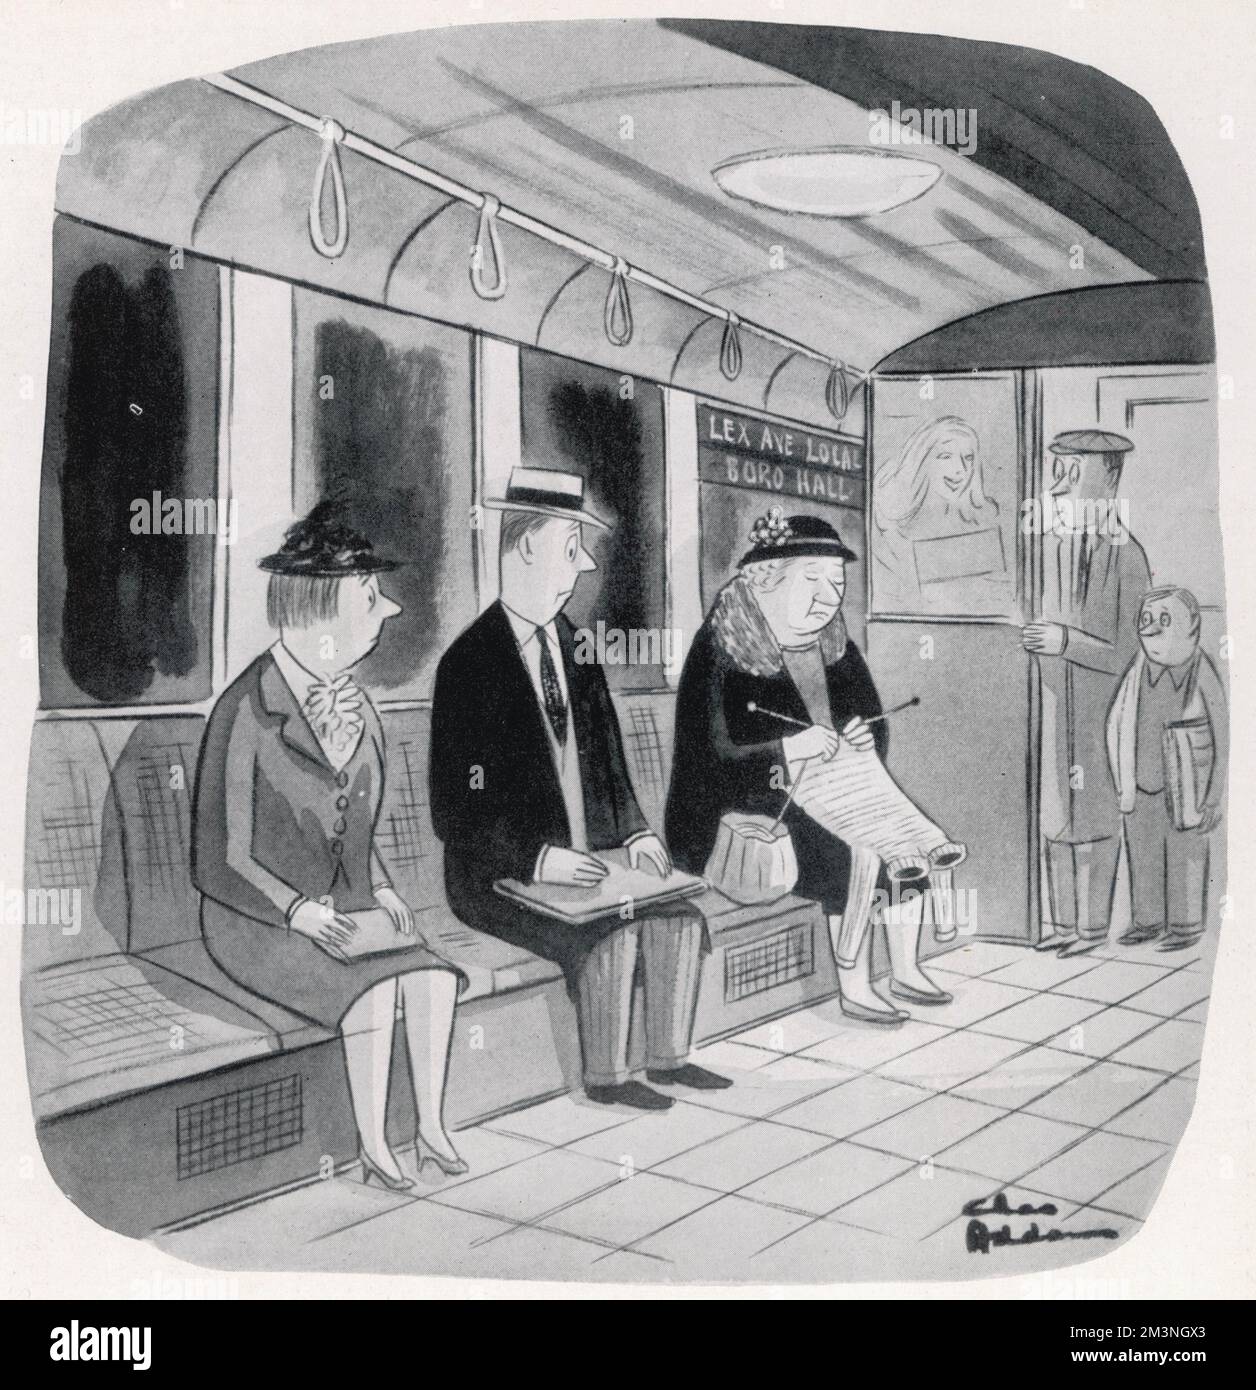 Un groupe de passagers du métro de New York s'alarment du vêtement grandissant qui apparaît des aiguilles tricotées d'une vieille dame - un chandail avec deux trous de cou. Date: 1955 Banque D'Images